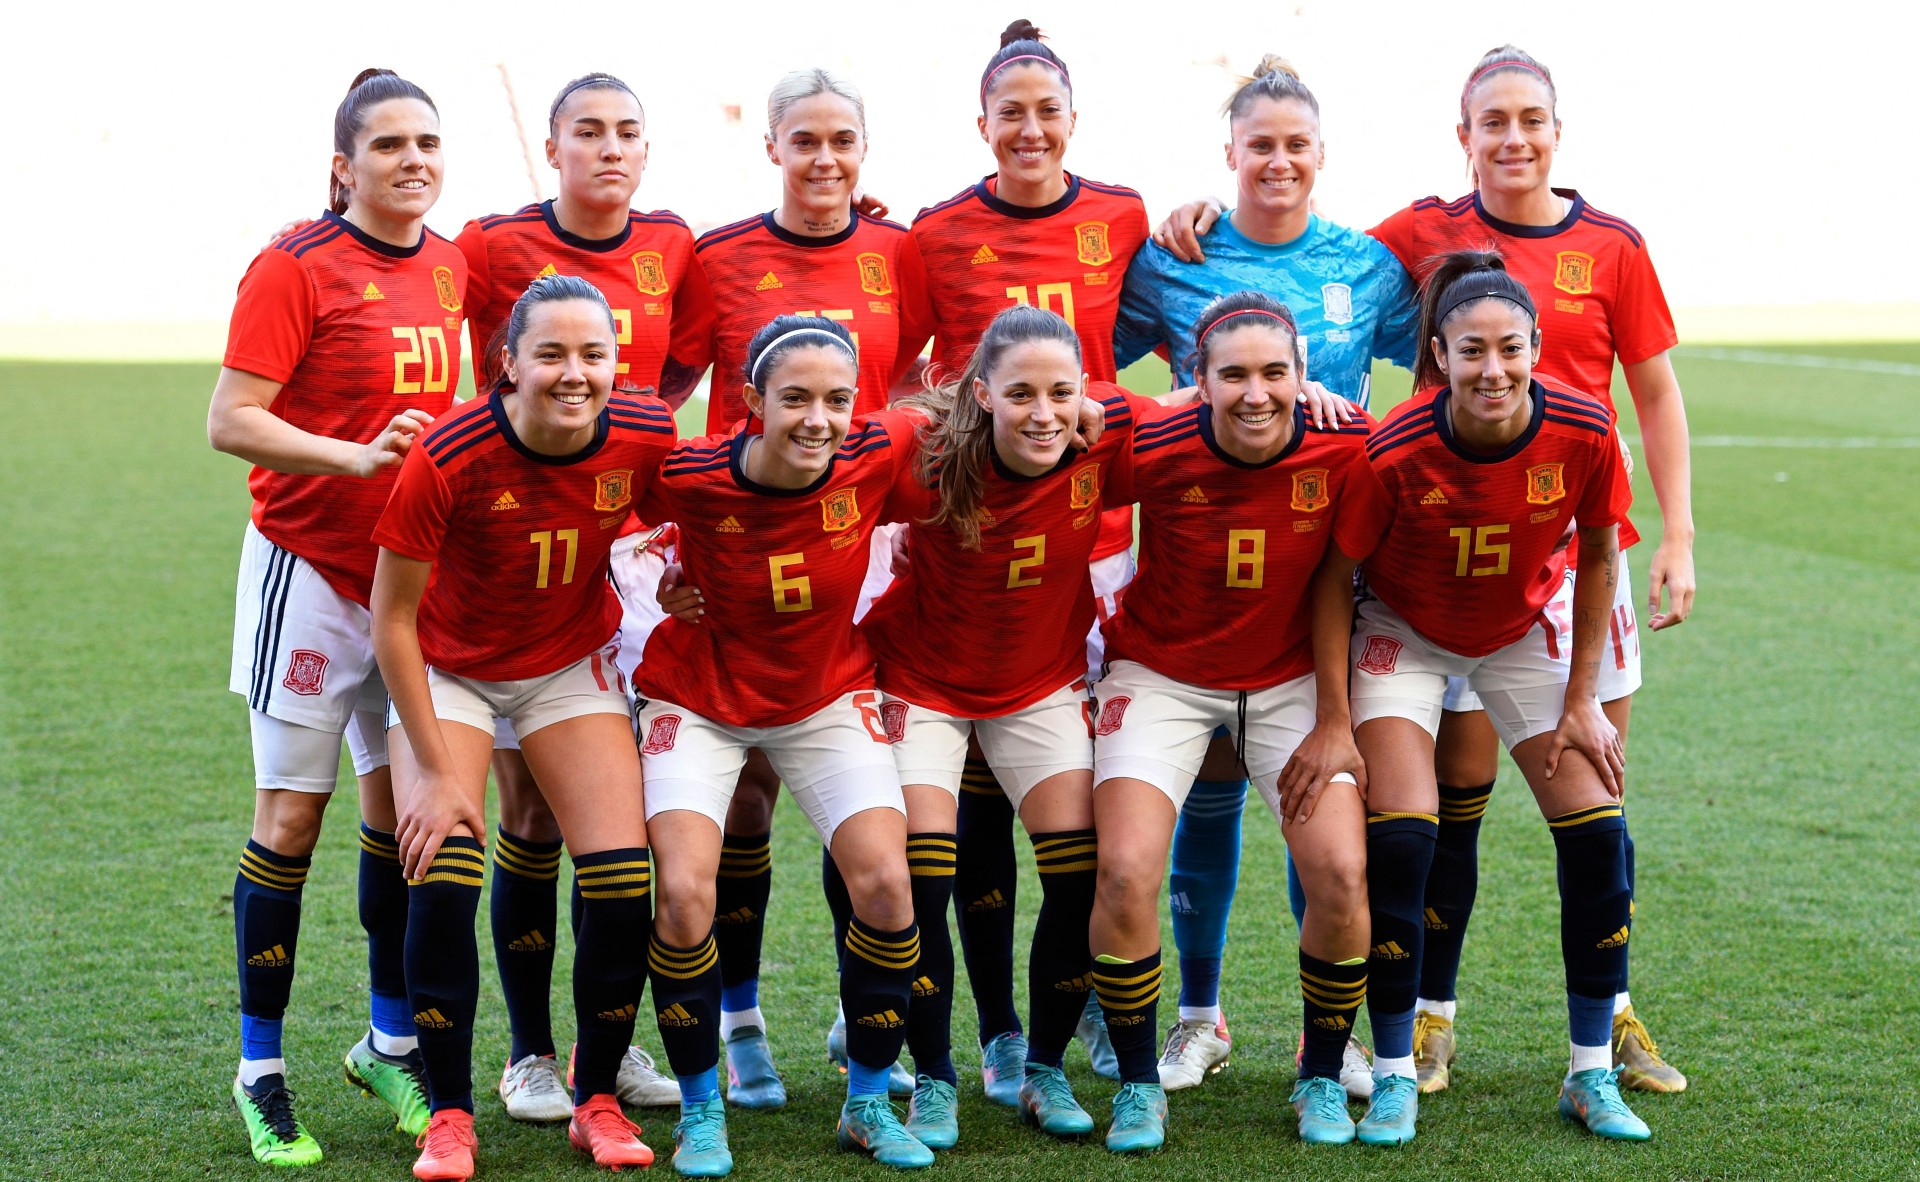 15 jugadoras de la Selección de España al equipo nacional